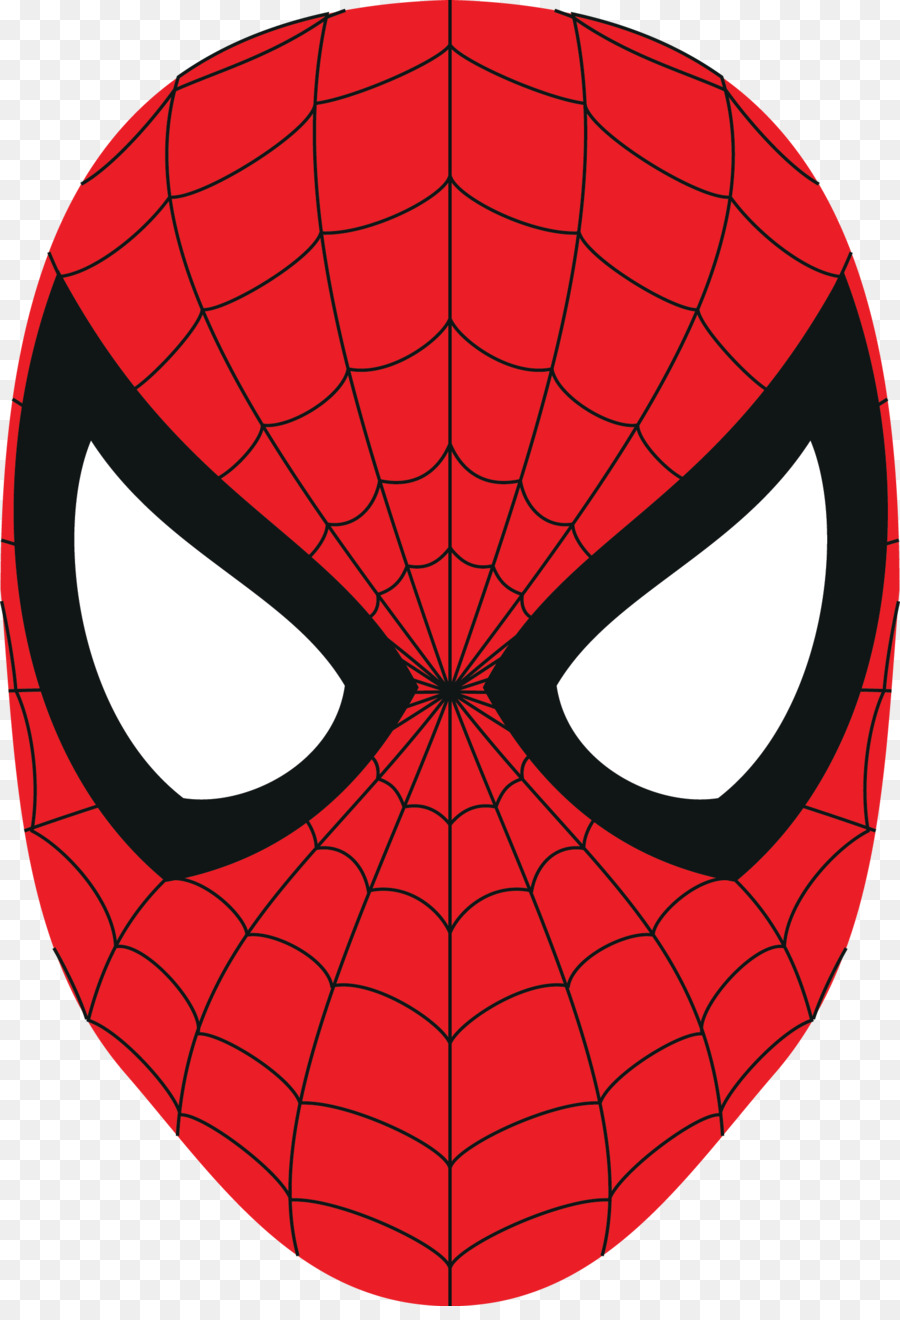 Spider-Man Logo Mask Clip art - mask png download - 1632*2368 - Free Transparent Spiderman png Download.